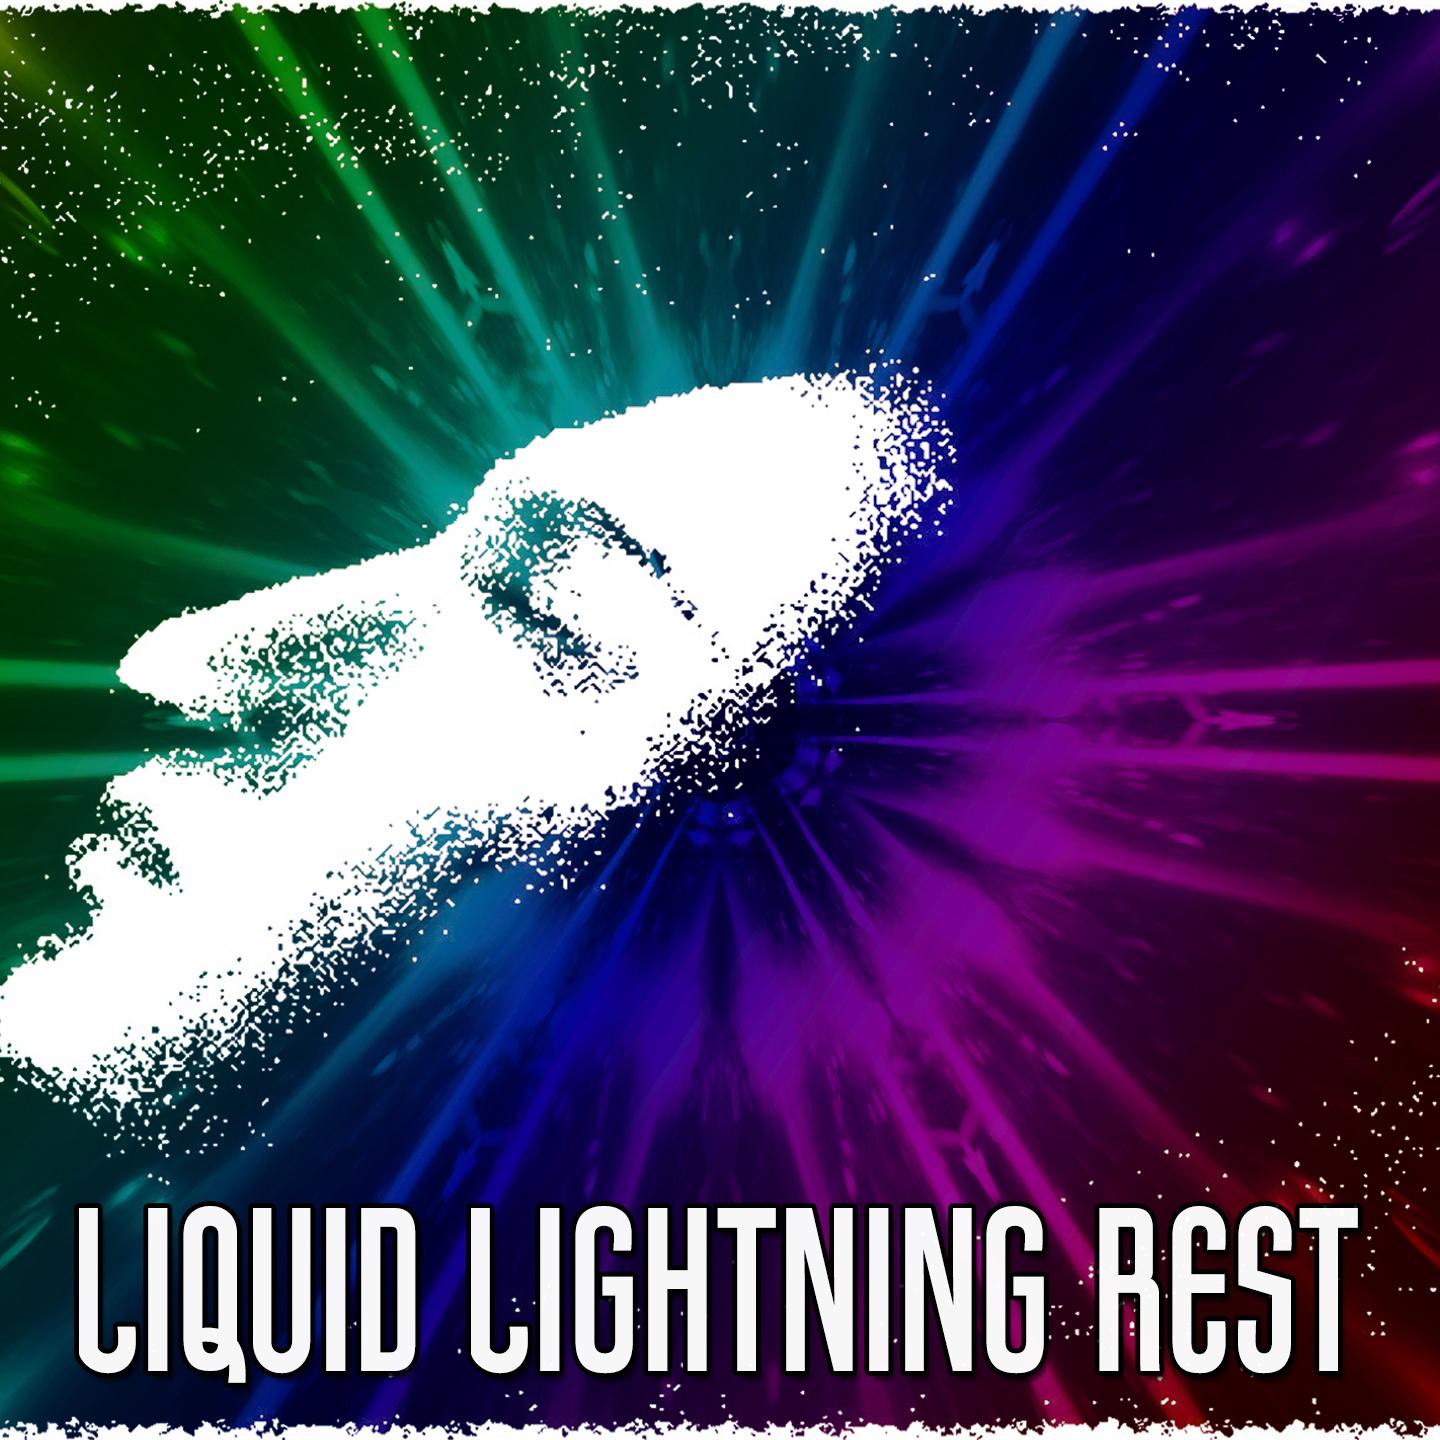 Liquid Lightning Rest